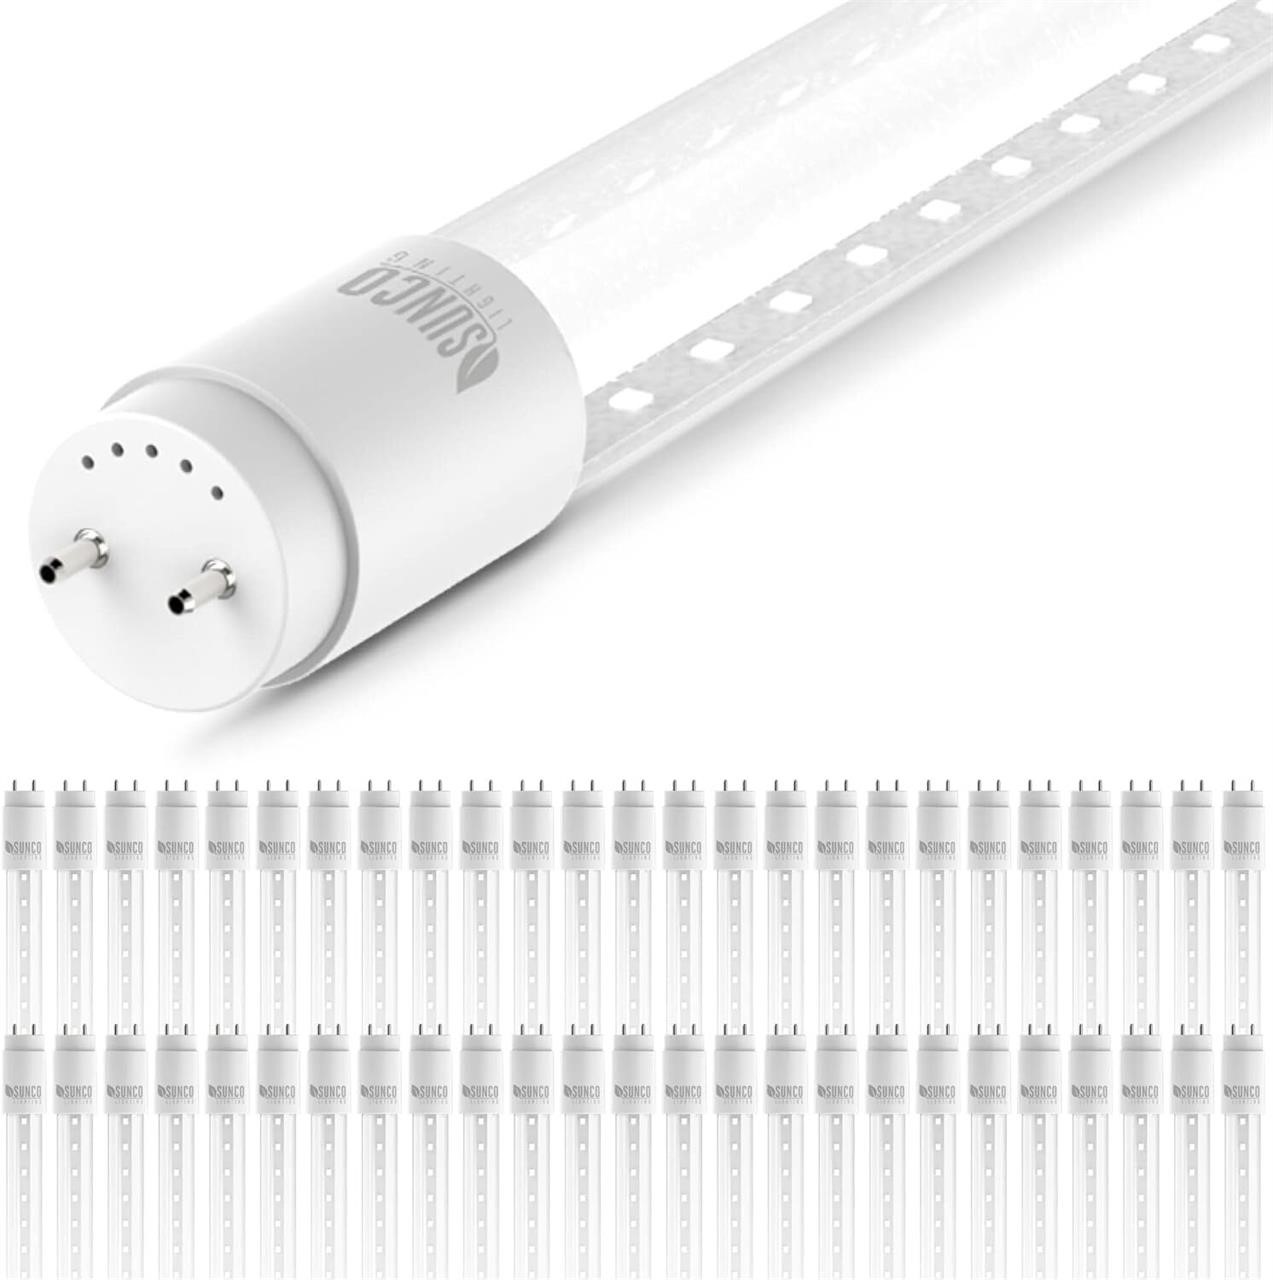 Sunco T8 LED 4FT Tube Light Bulbs  50 Pack